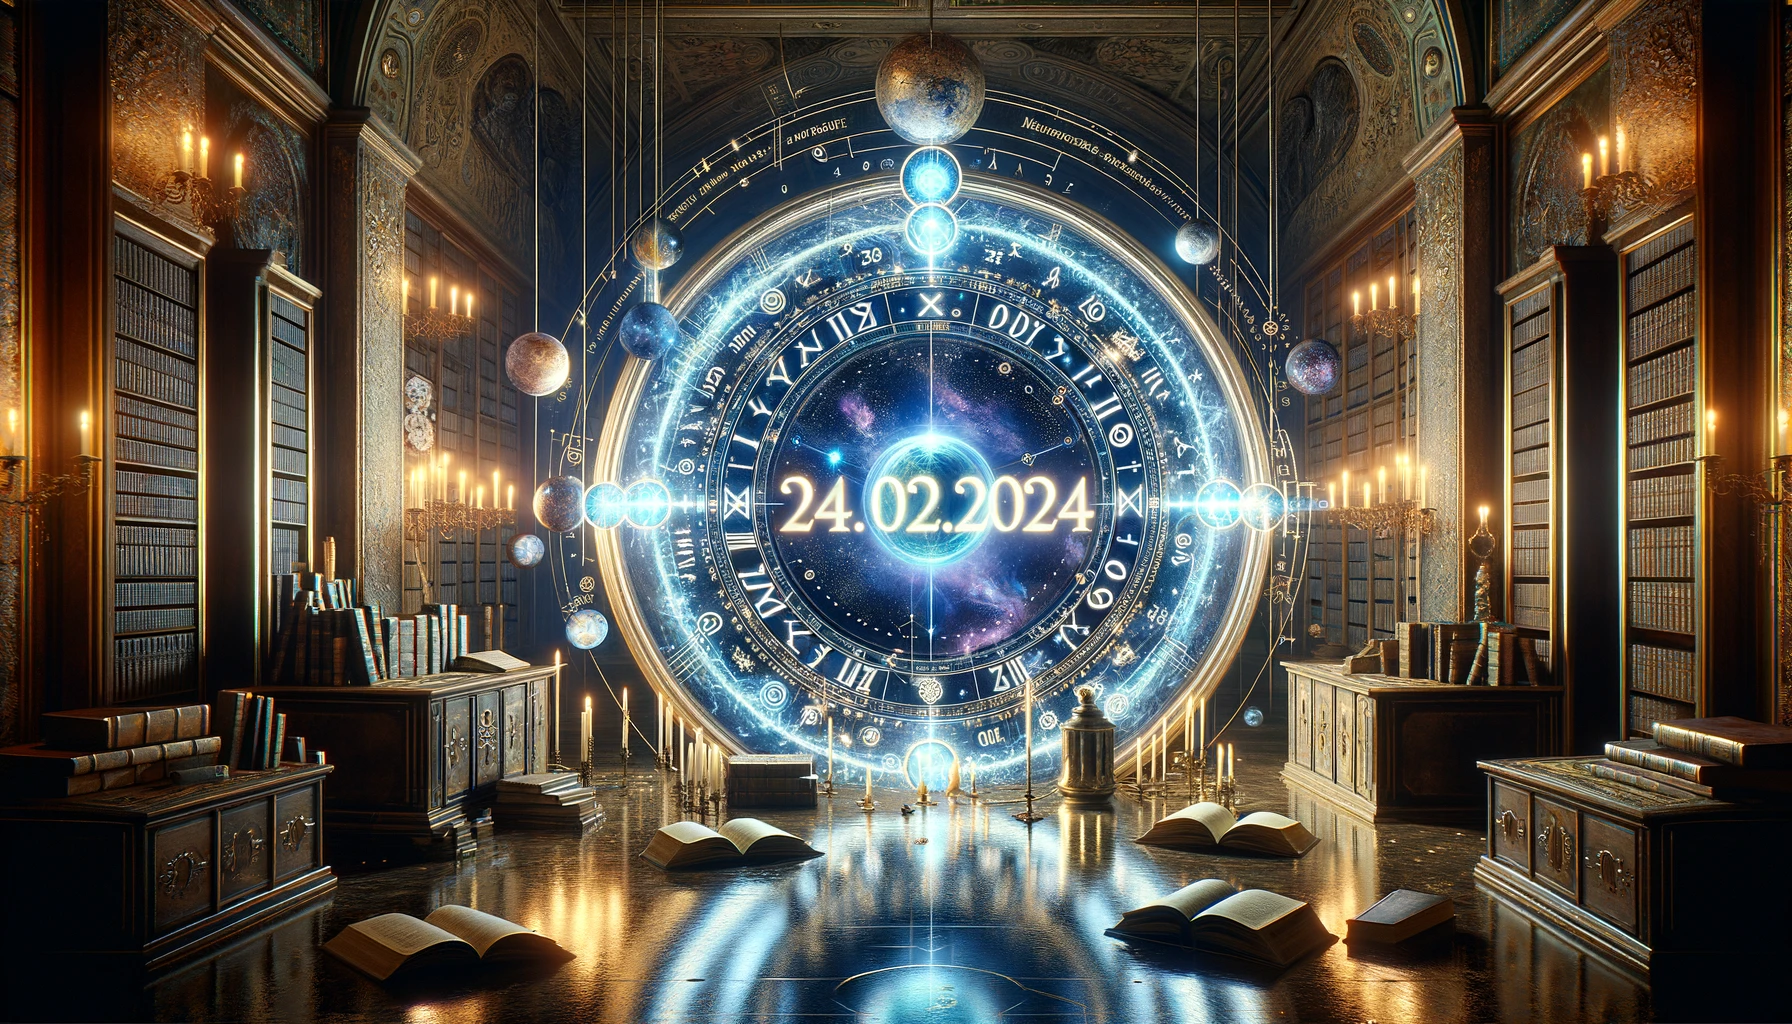 Зеркальная дата 24.02.2024 – магия или просто совпадение?